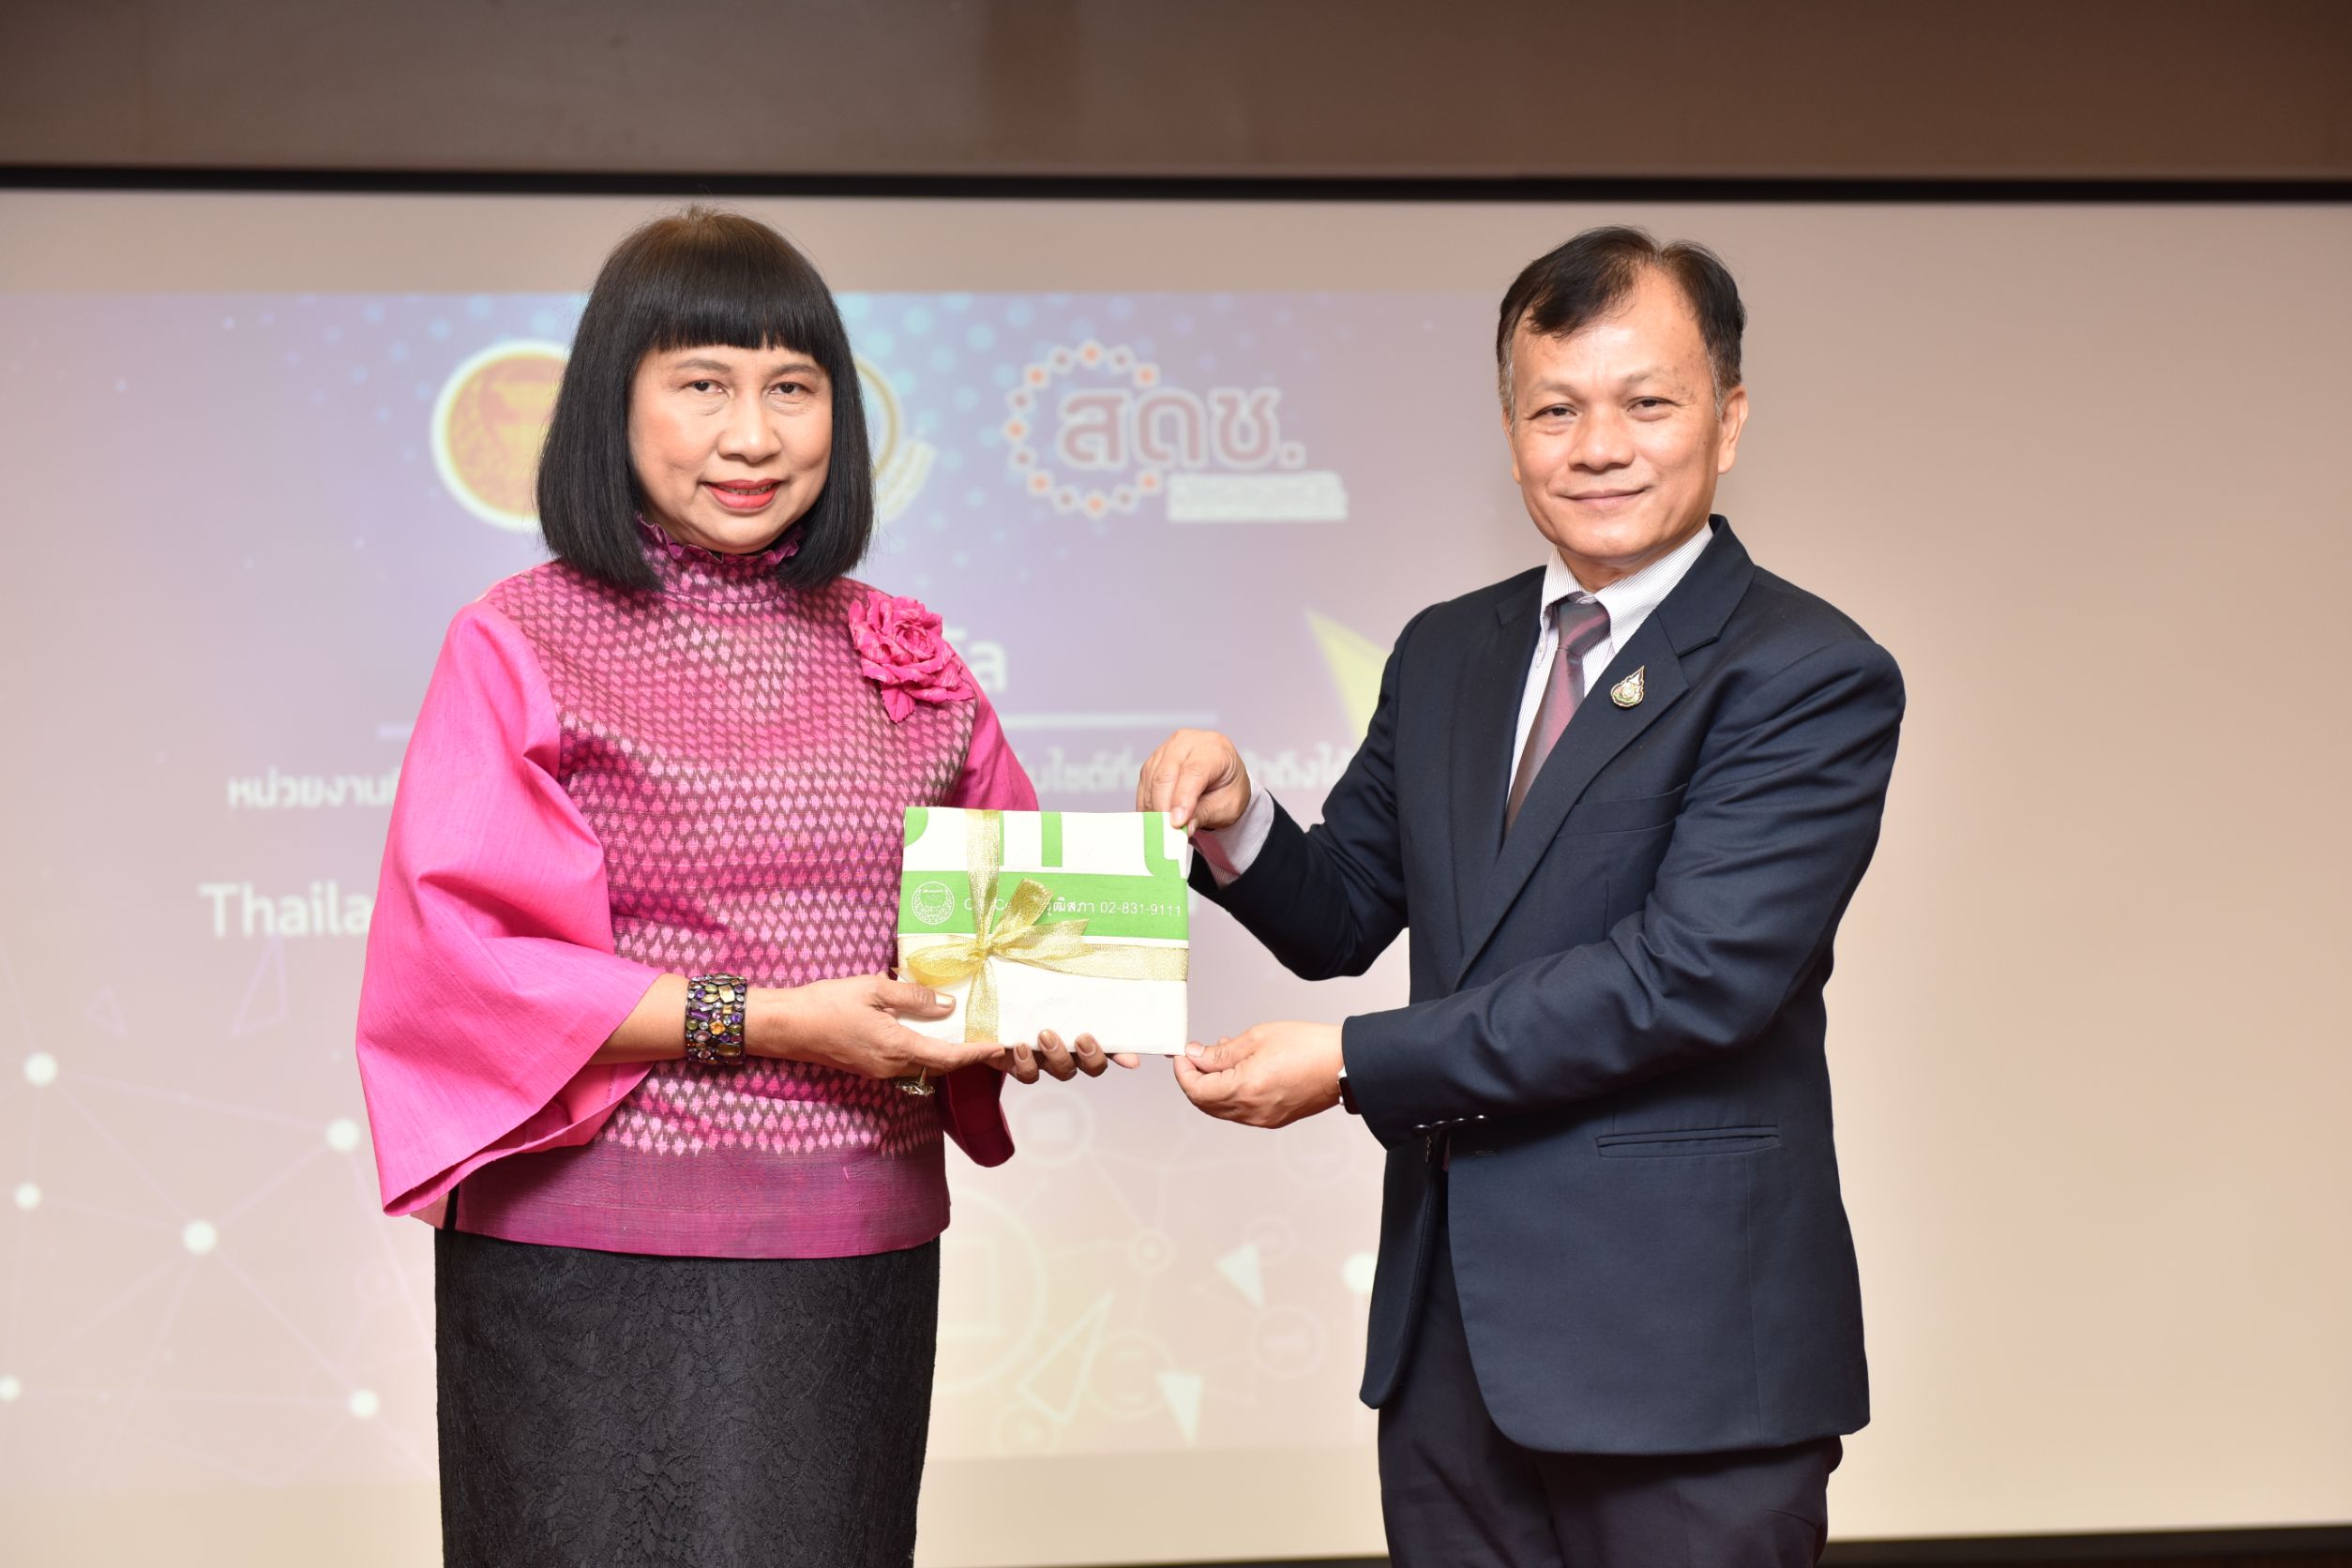 "เลขาธิการ สดช. มอบรางวัลดีเด่นหน่วยงานที่พัฒนาเว็บไซต์ผ่านเกณฑ์การประกวดเว็บไซต์ที่ทุกคนเข้าถึงได้ Thailand Digital Accessibility Award 2023 แก่สำนักงานเลขาธิการวุฒิสภา"